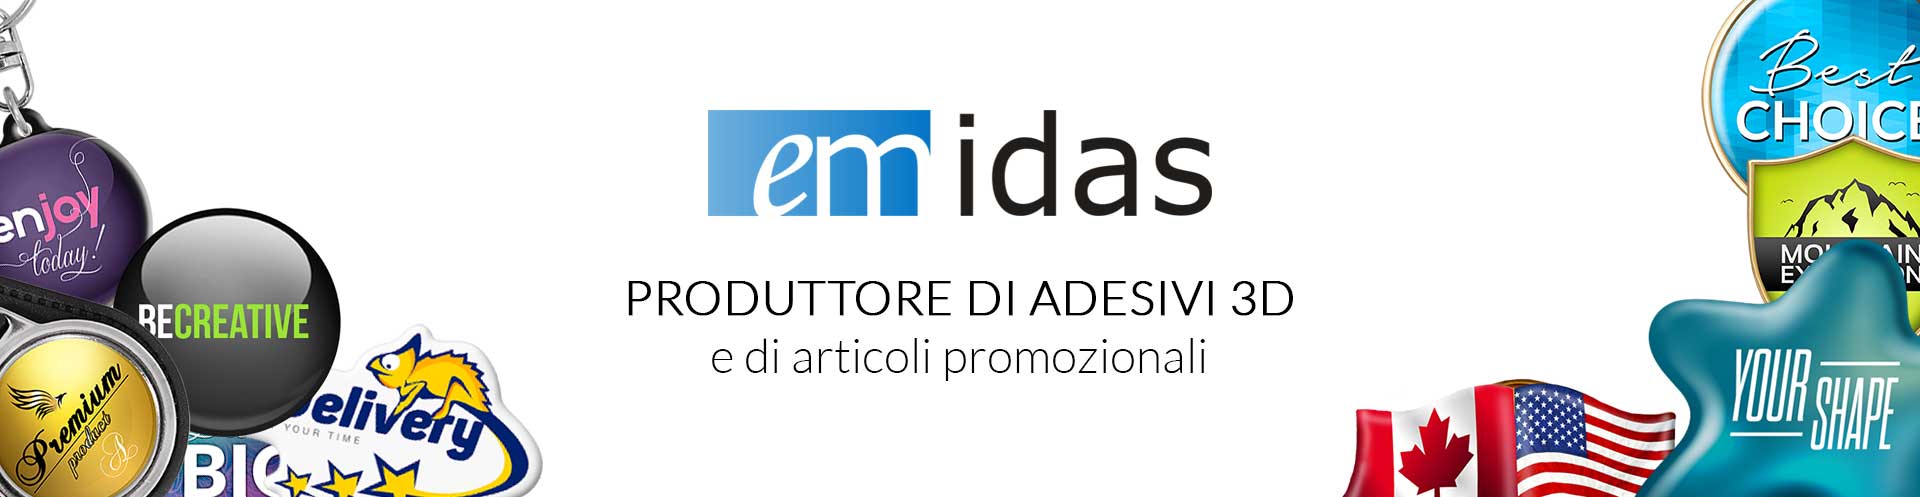 EMIDAS | Produttore di adesivi 3D e di articoli promozionali